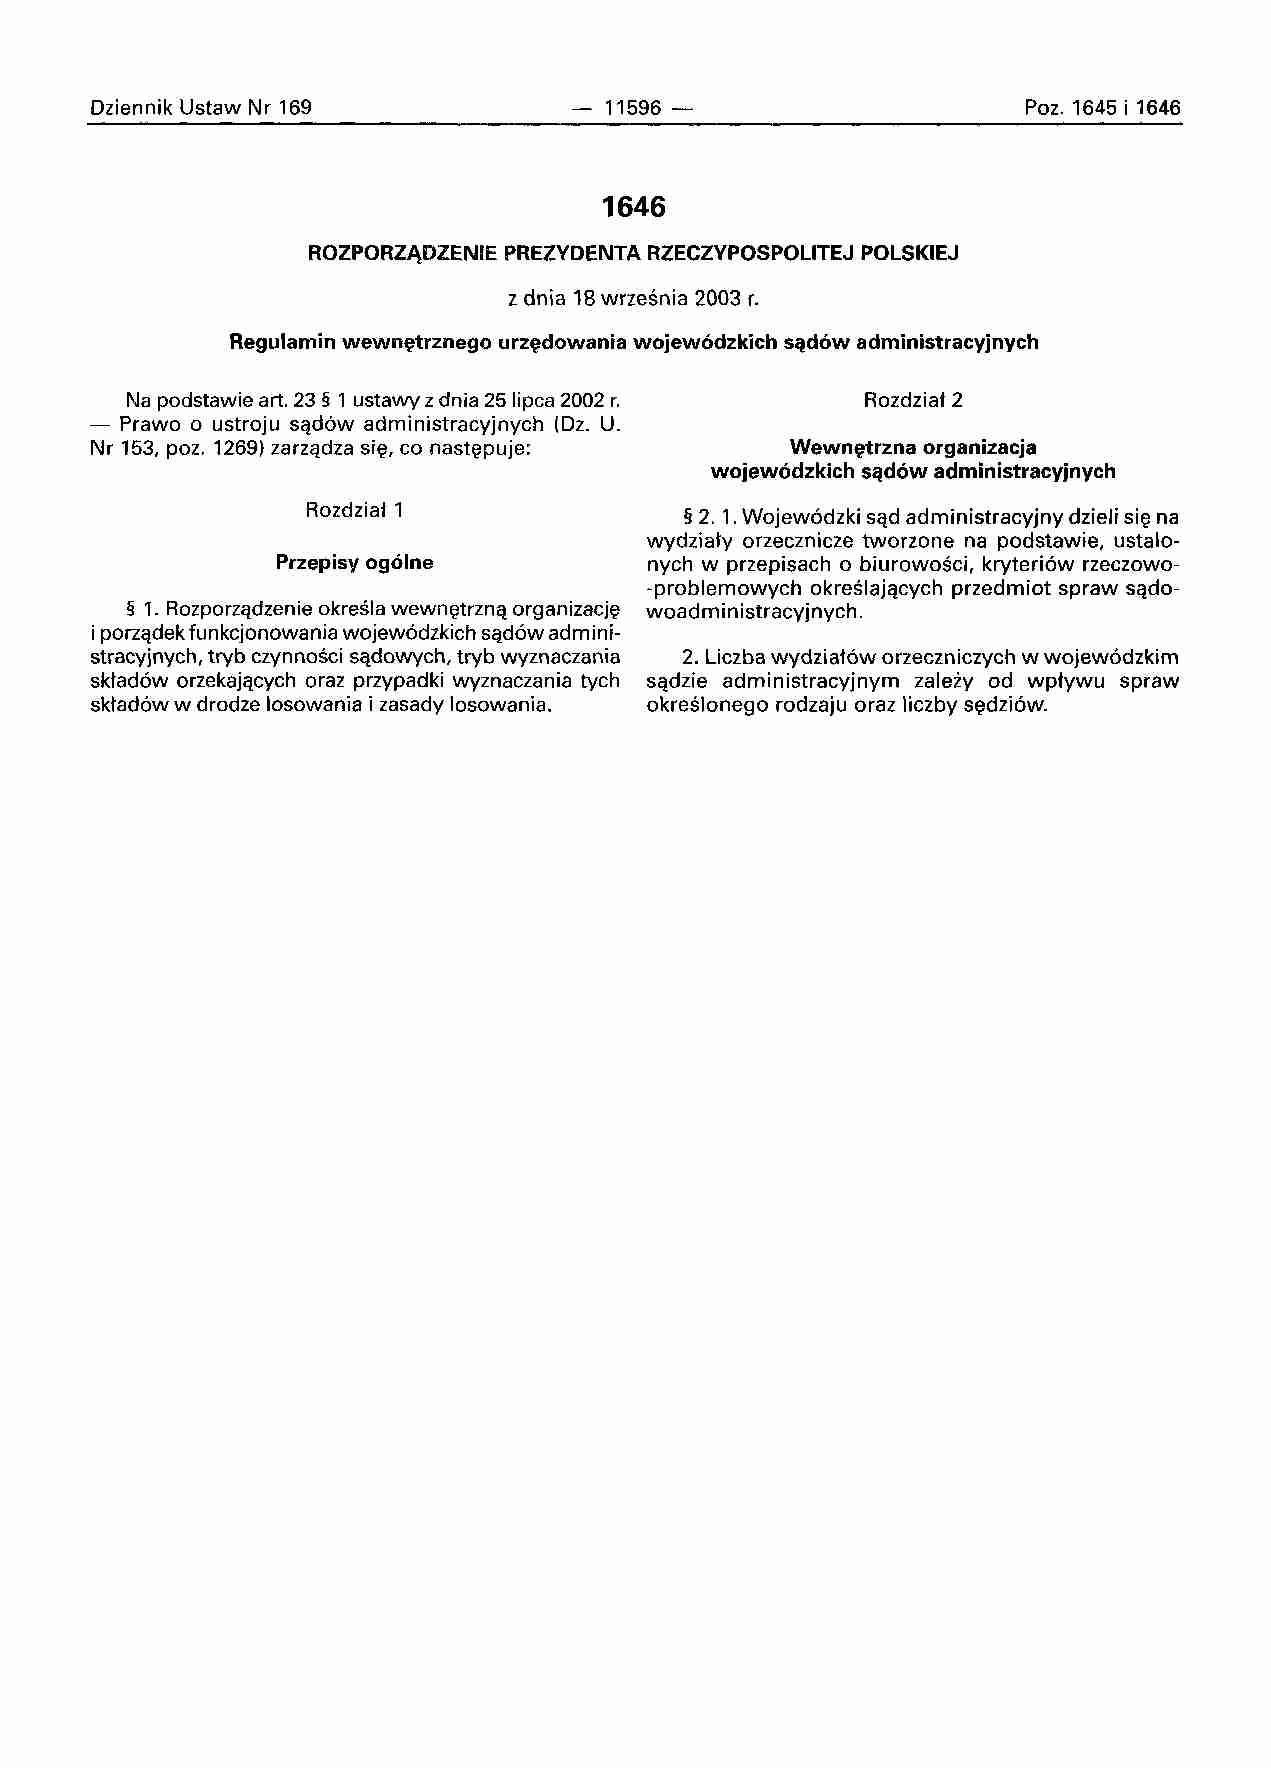 Regulamin urzędowania wojewódzkich sądów administracyjnych - strona 1